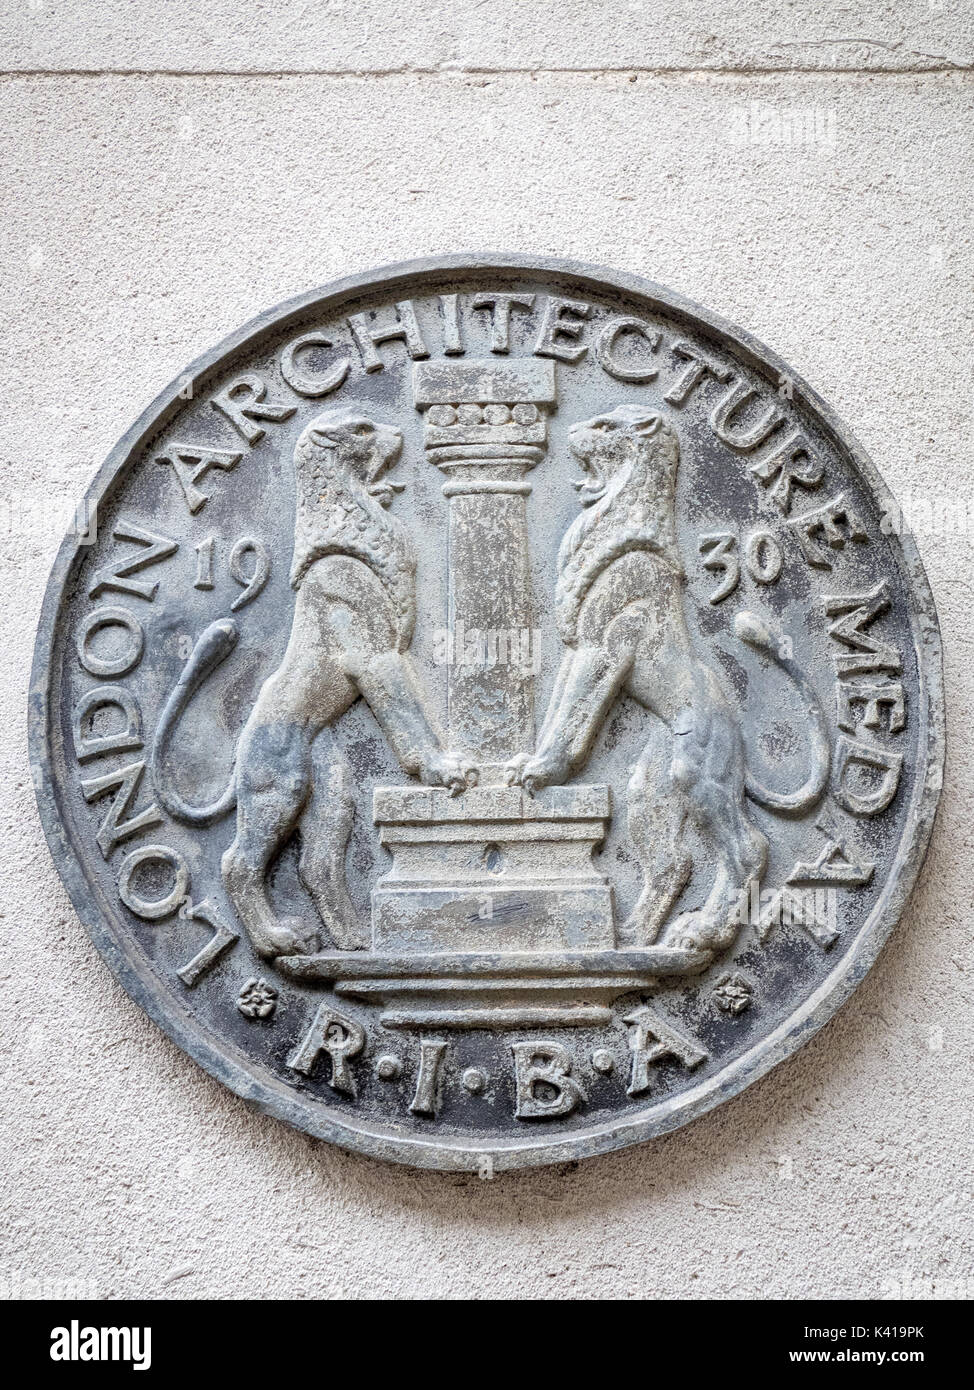 RIBA Architecture de Londres 1930 Médaille sur un immeuble à Cornhill, dans la ville de London, financial district Banque D'Images